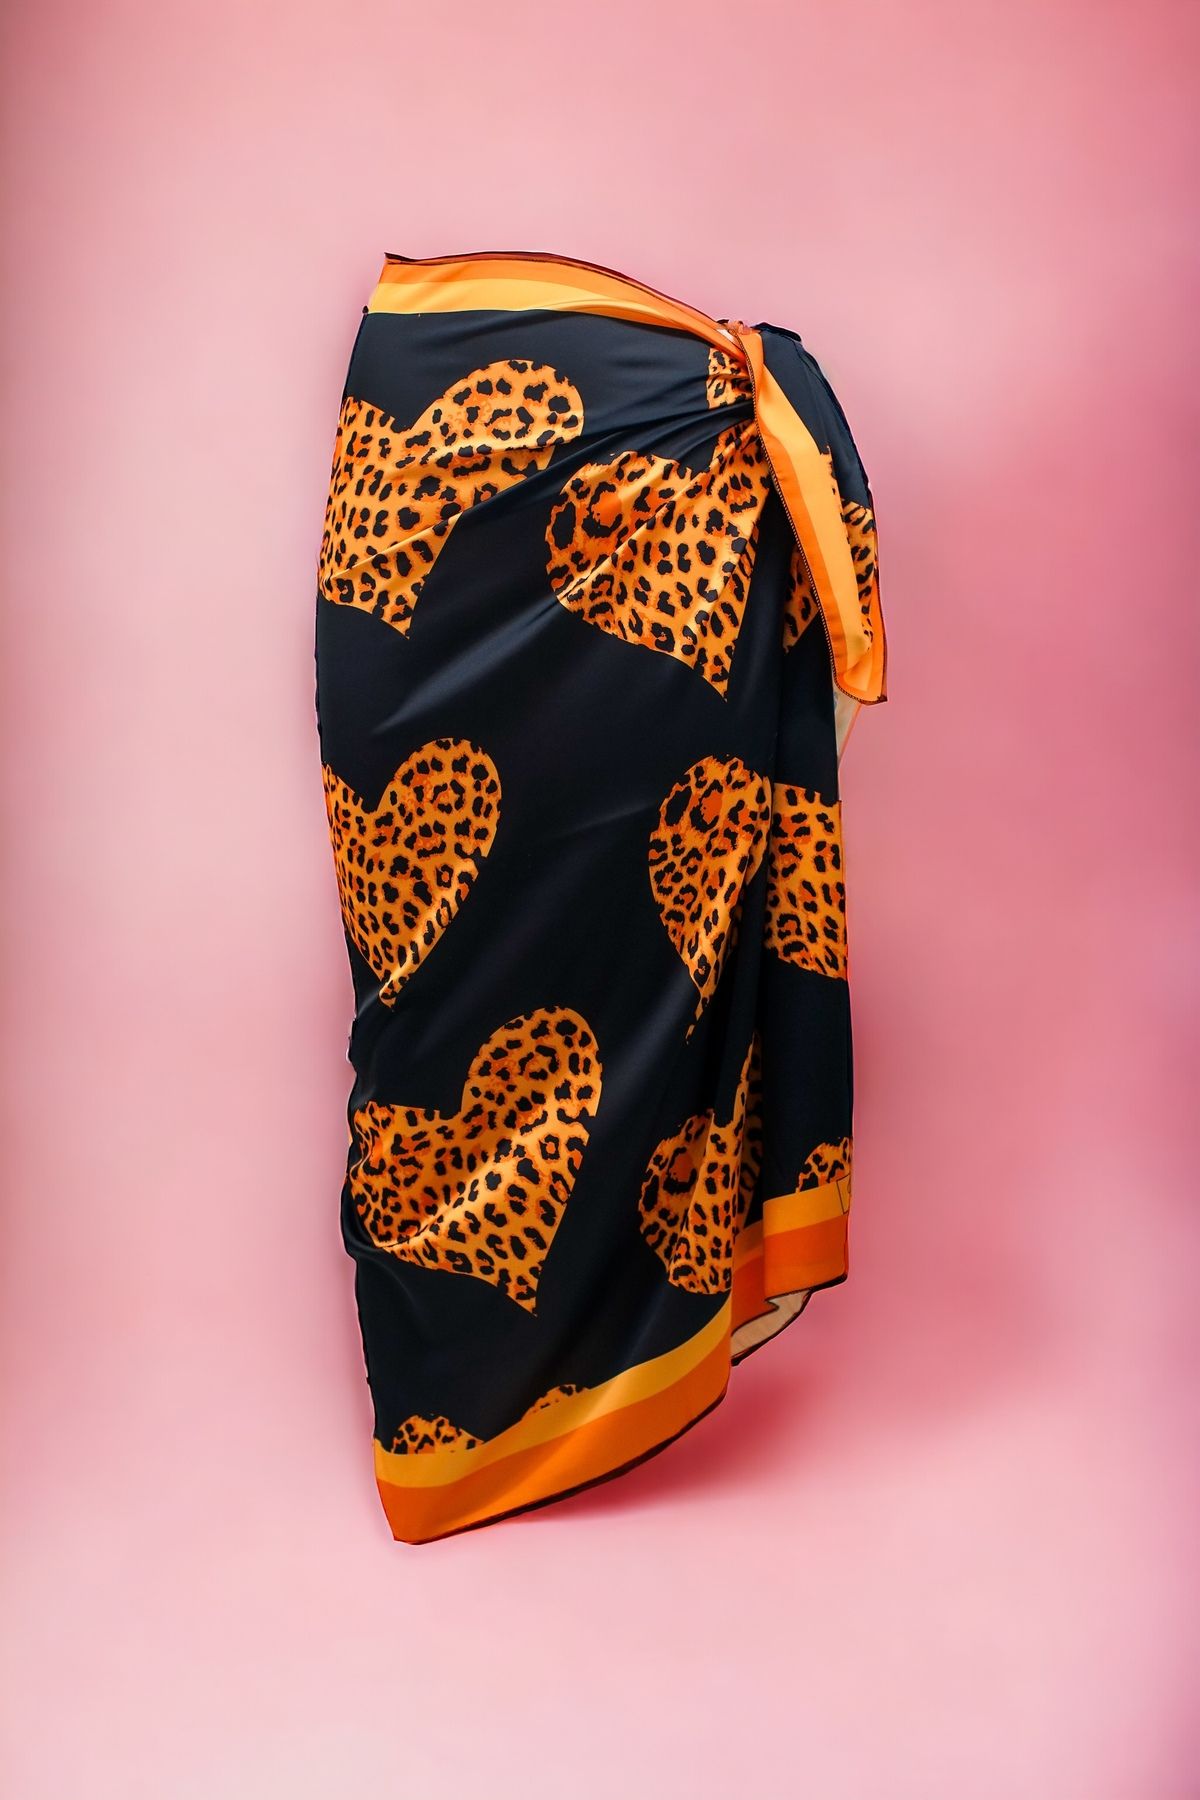 pistore Siyah Leopar Kalp Desenli Uzun Pareo Saten Kadın Plaj Elbisesi Yeni Sezon